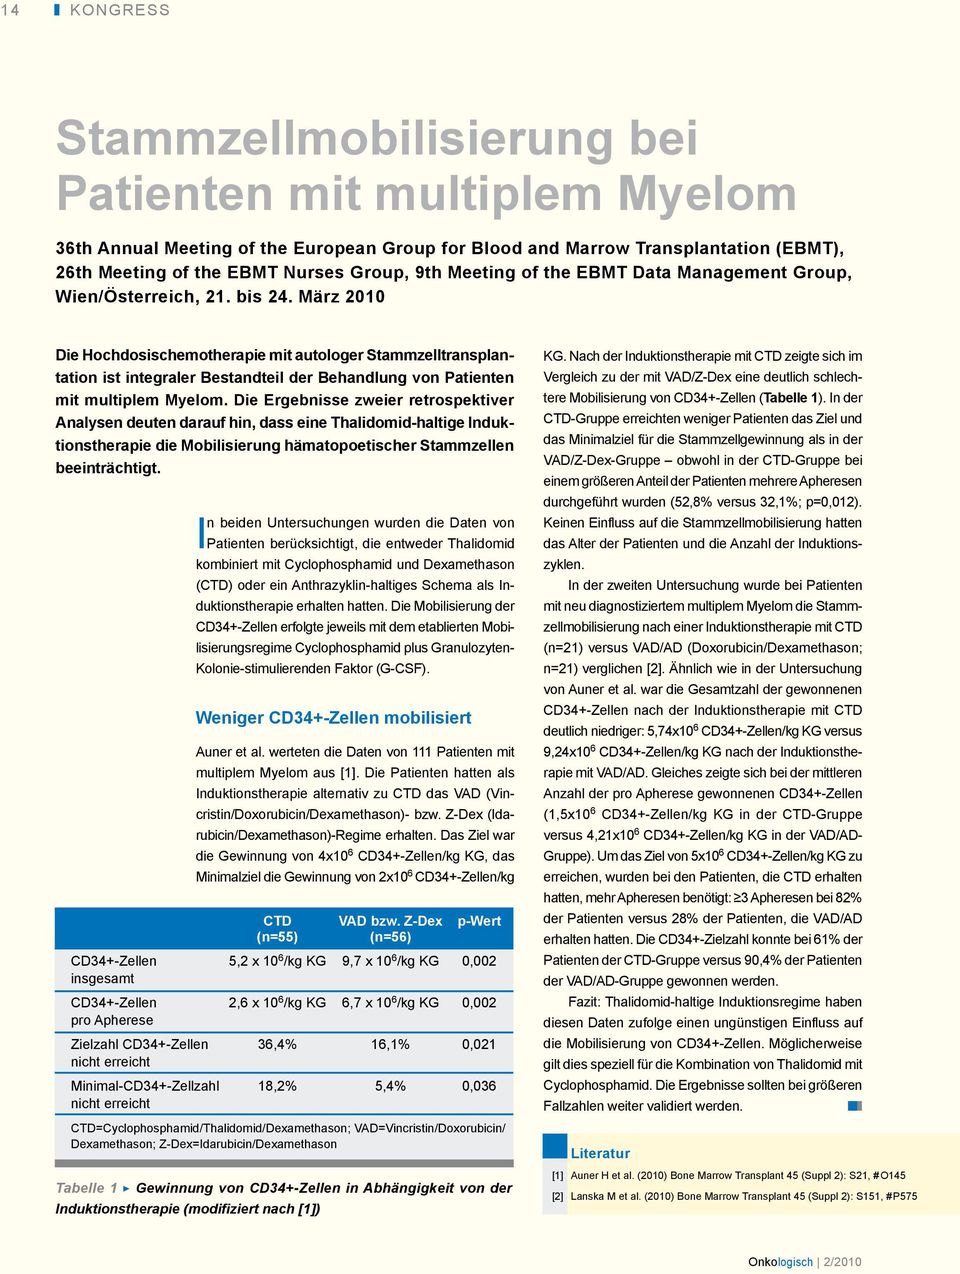 März 2010 Die Hochdosischemotherapie mit autologer Stammzelltransplantation ist integraler Bestandteil der Behandlung von Patienten mit multiplem Myelom.